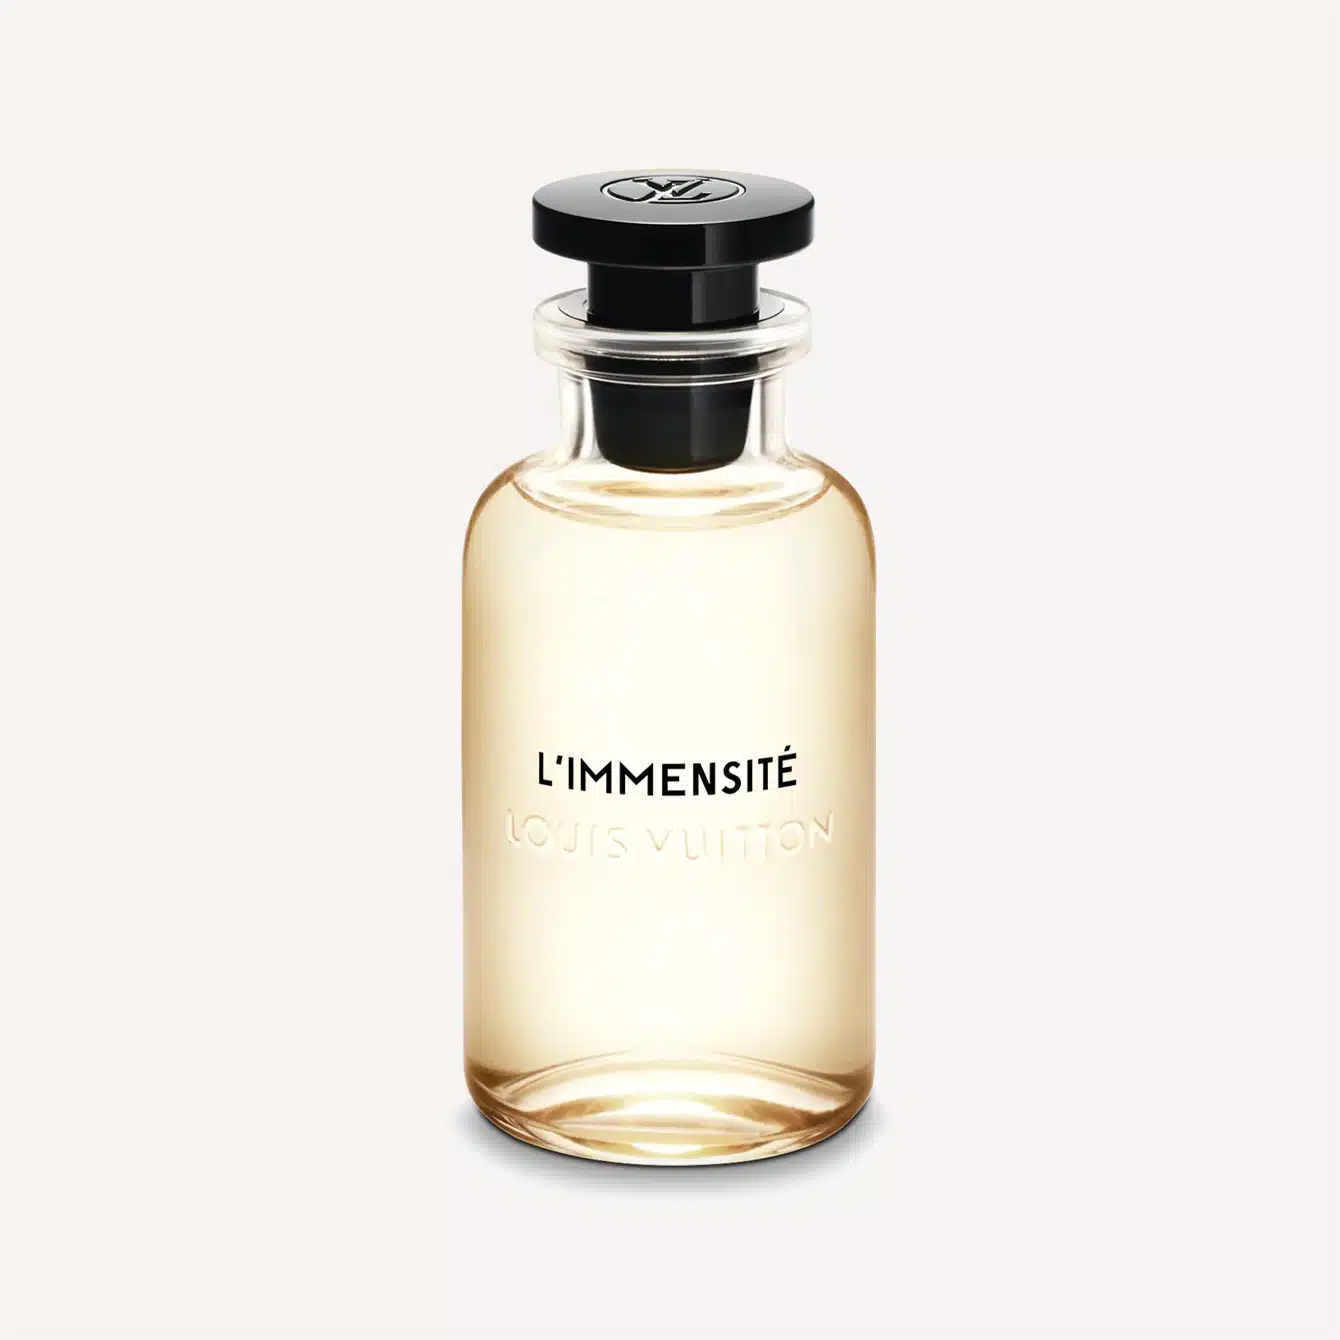 Louis Vuitton Limmensite Eau de Parfum